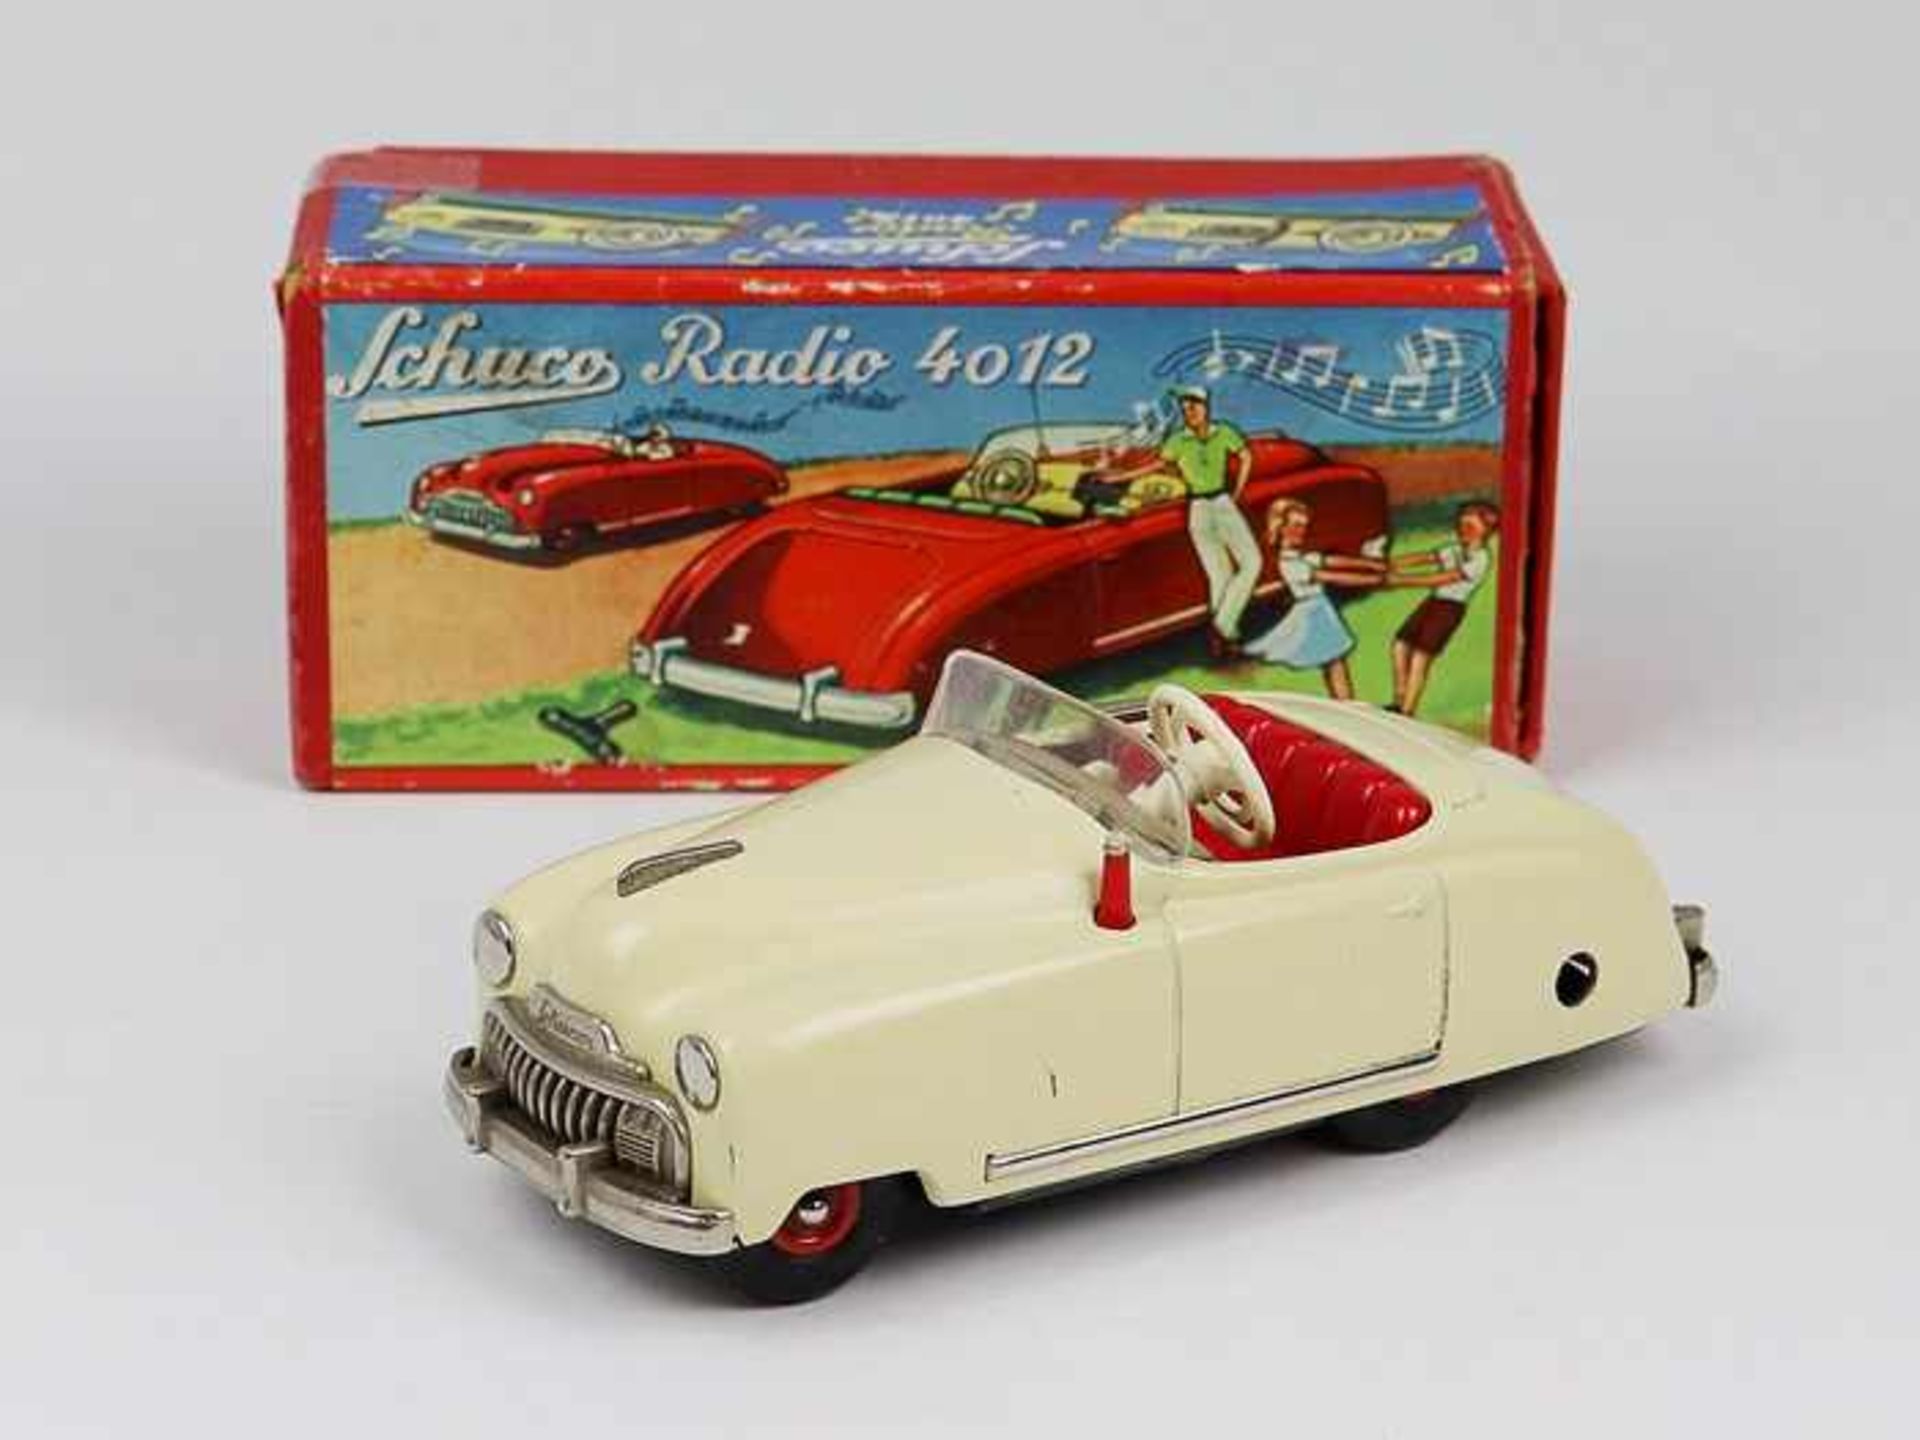 Schuco - Blechspielzeug1950er J., Auto Radio 4012, Made in U.S.-Zone Germany, beiges Cabrio aus